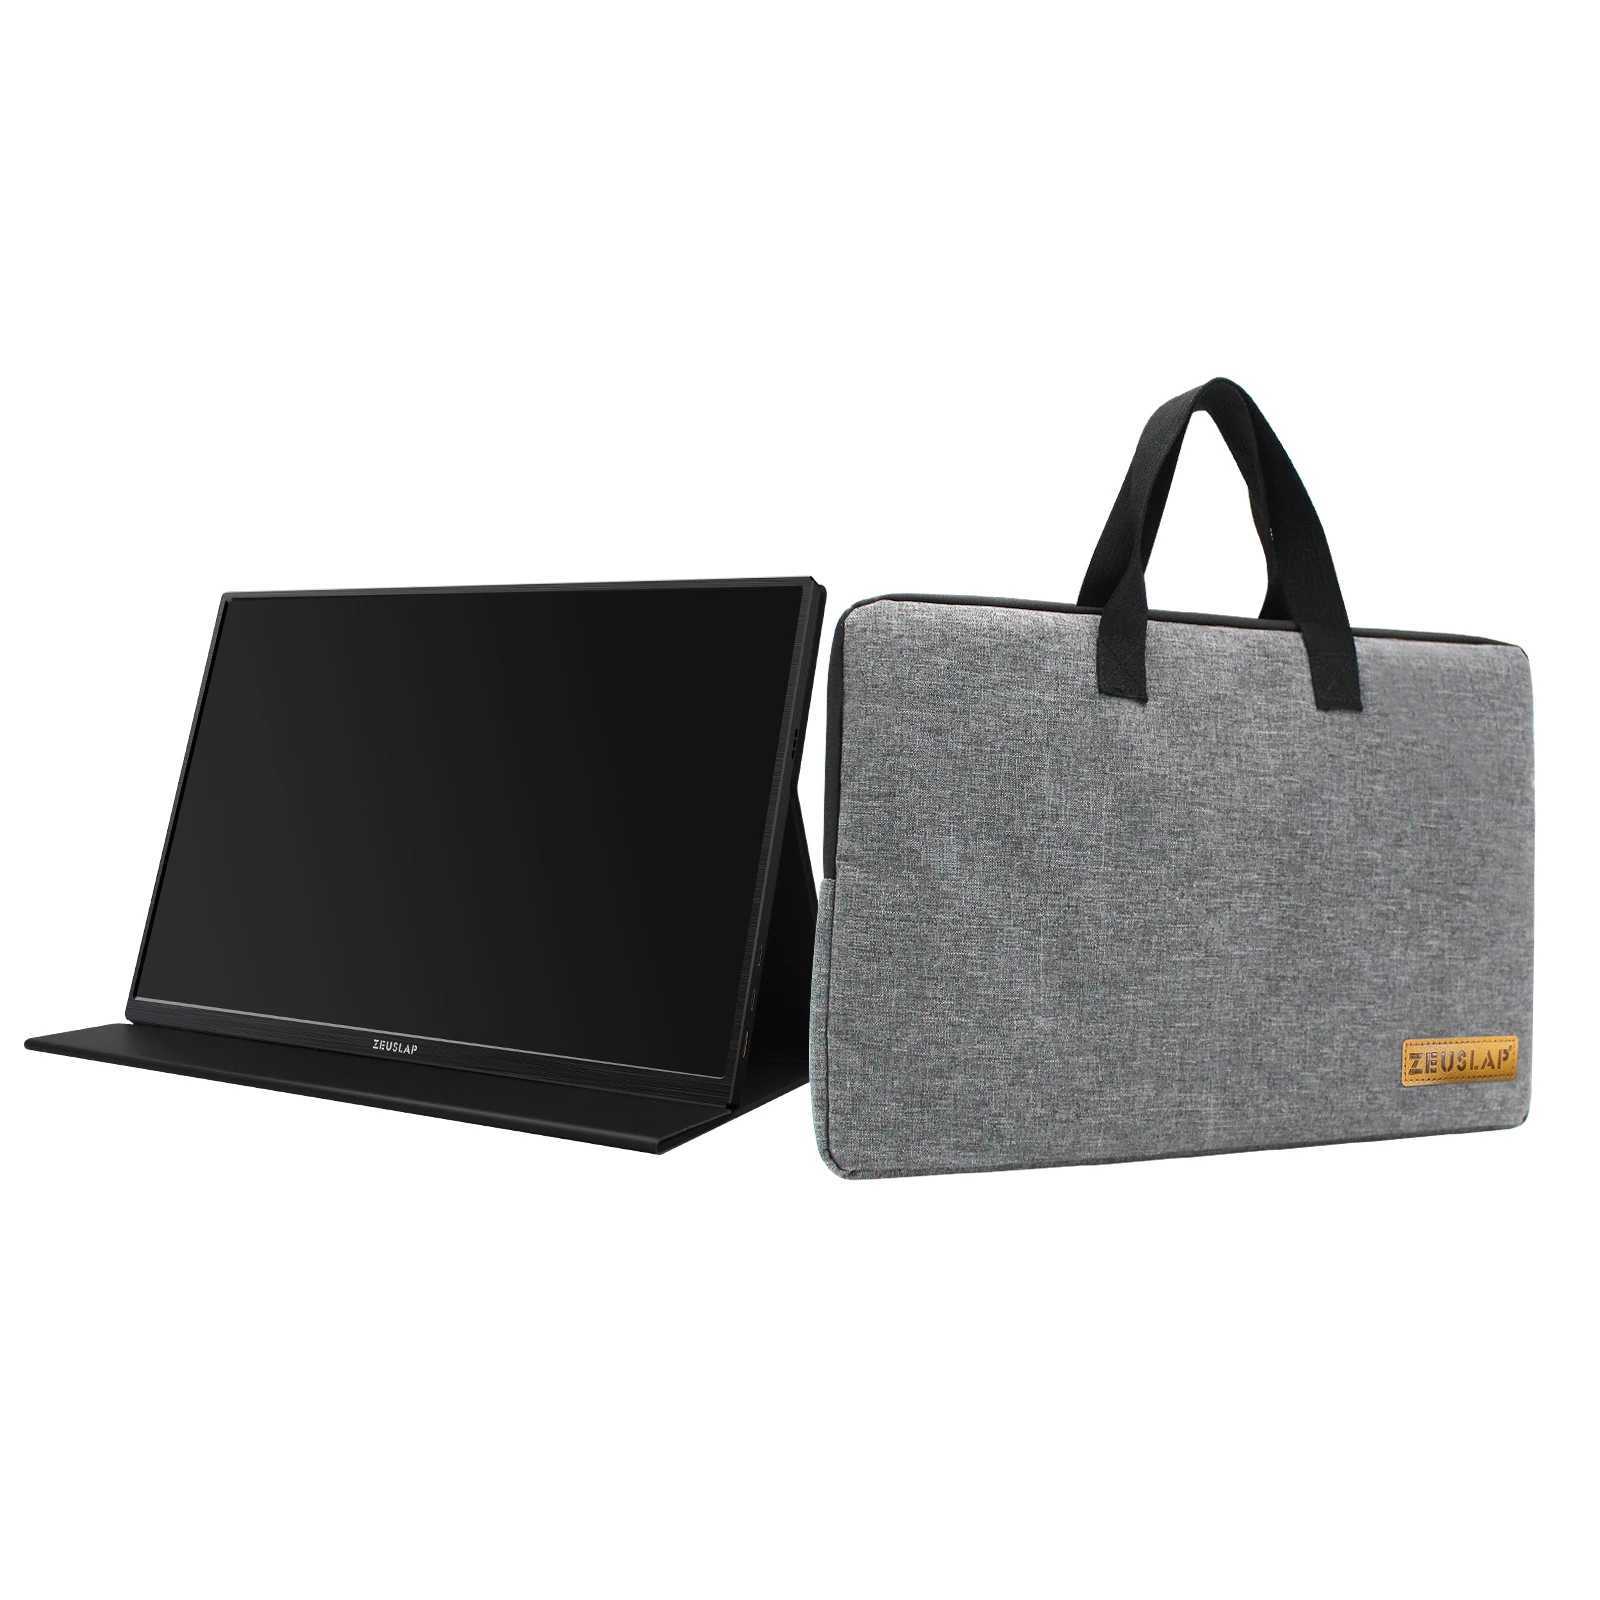 Чехлы для ноутбука, рюкзак ZEUSLAP 13,3, 14, 15,6, 16, портативная сумка для монитора, водонепроницаемая нейлоновая сумка-мессенджер для ноутбука, ультрабука